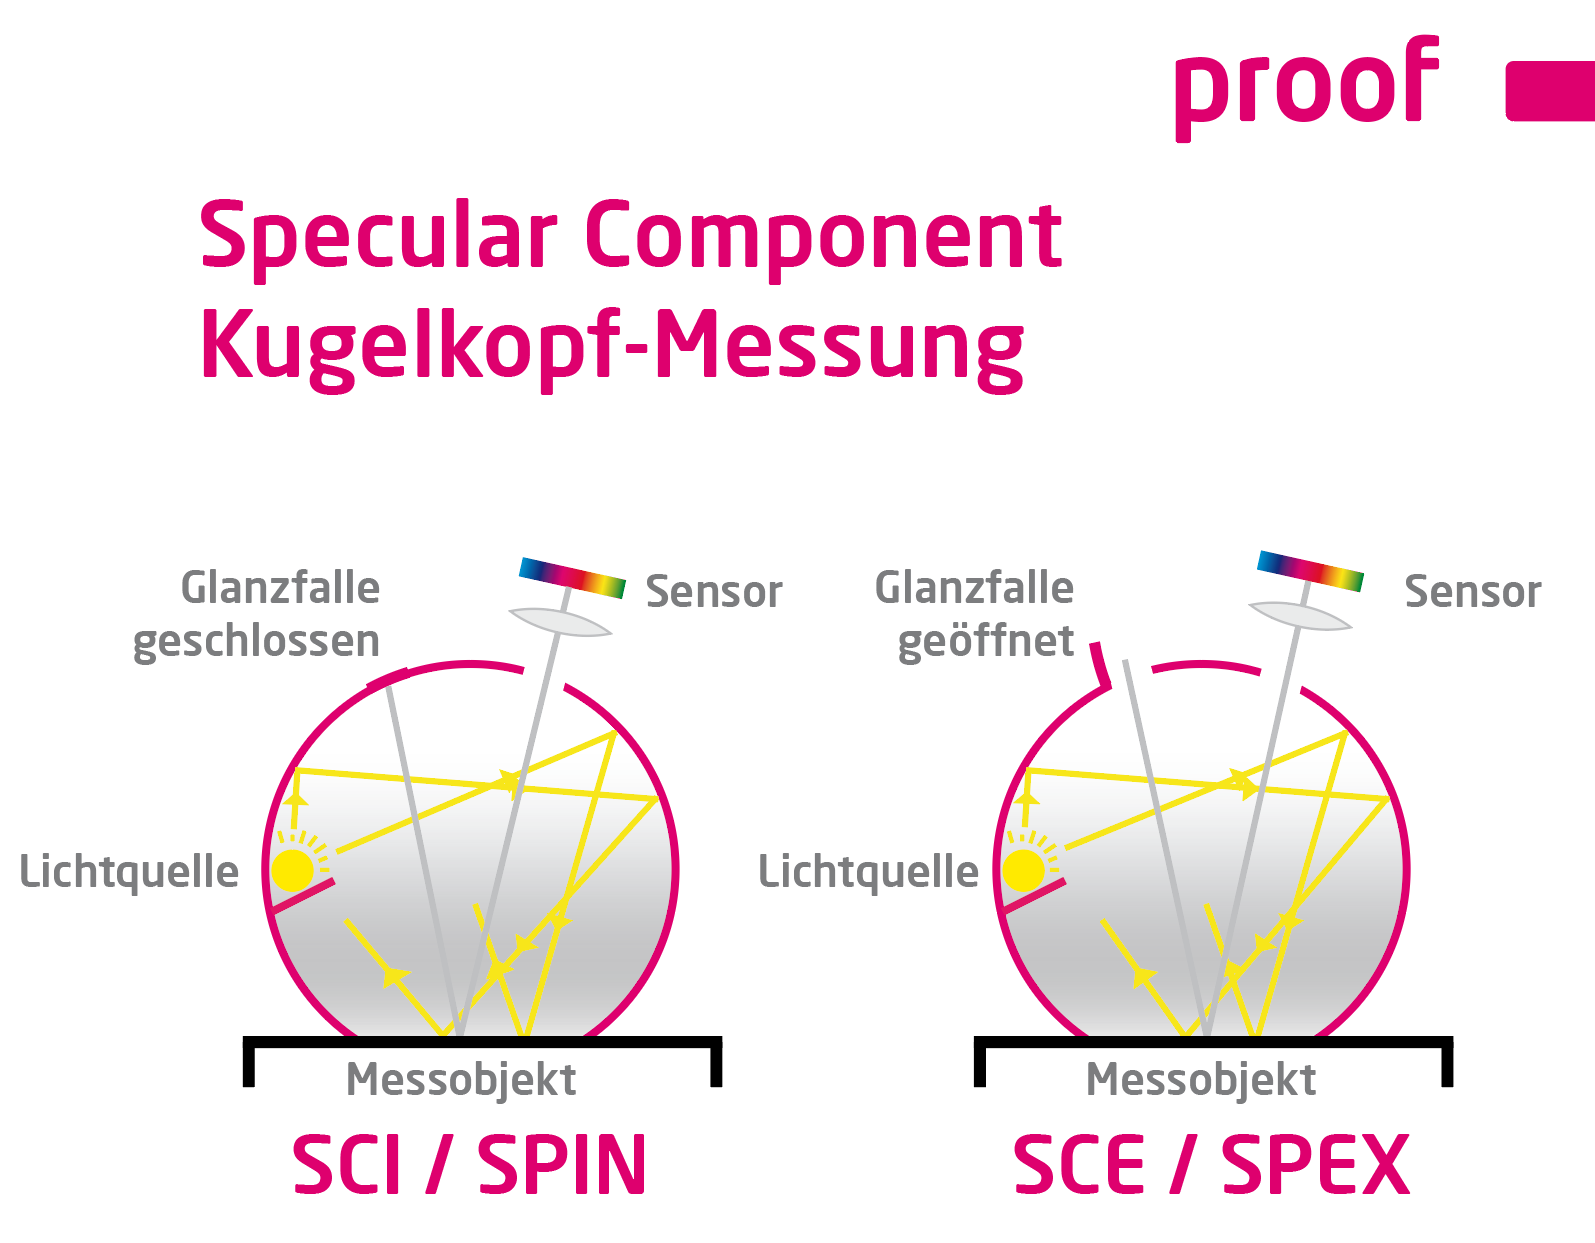 Spiegazione della misurazione della componente speculare della testa a sfera SCI / SPIN e SCE / SPEX